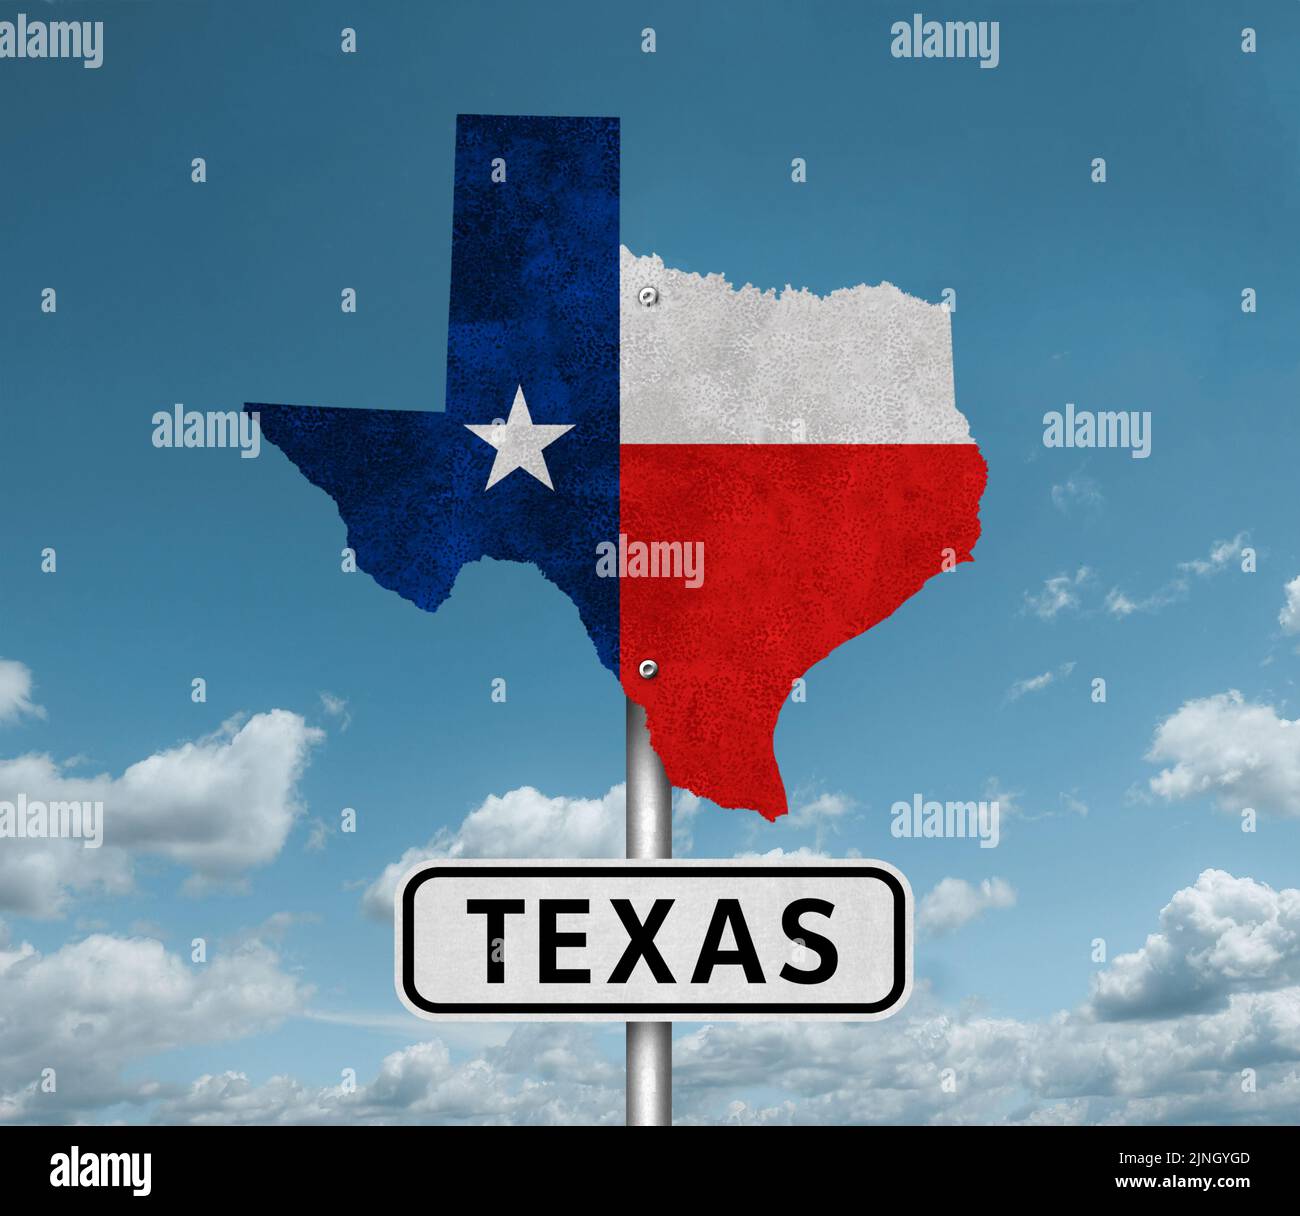 Bandera y mapa del estado de Texas - señal de carretera Foto de stock